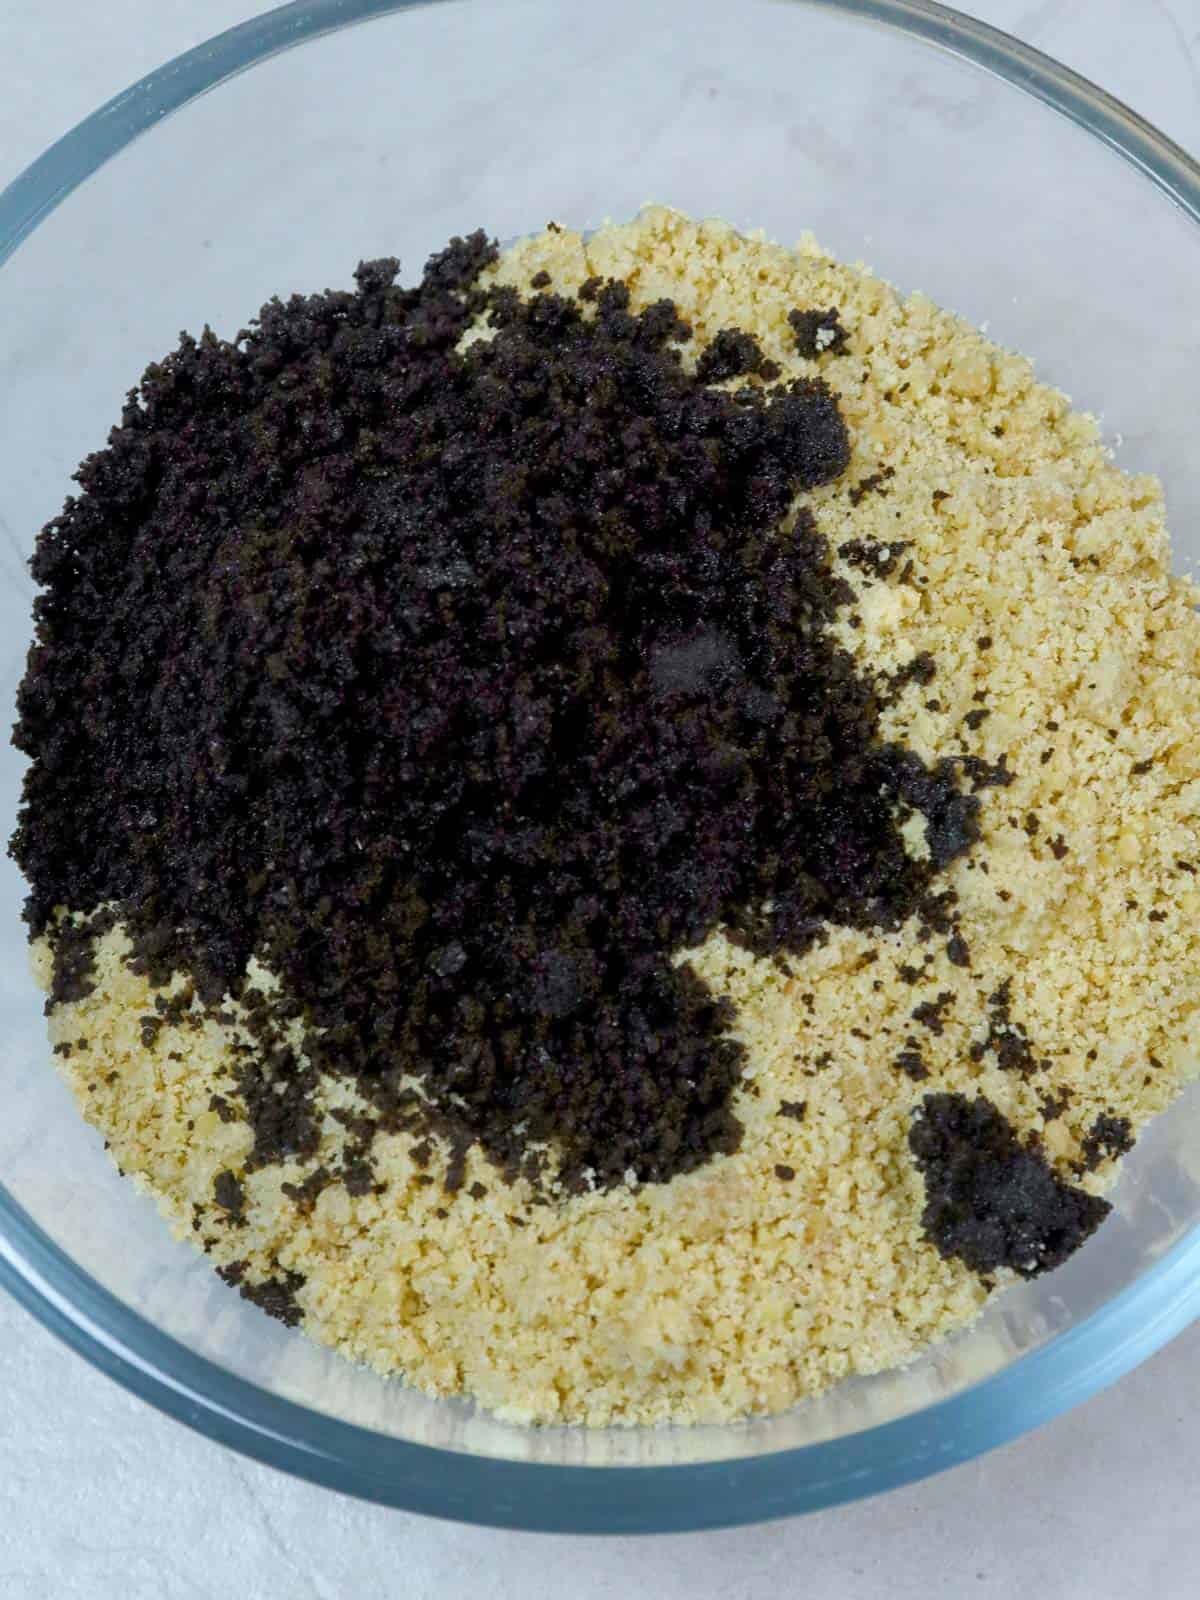 oreo polvoron mixture in a bowl